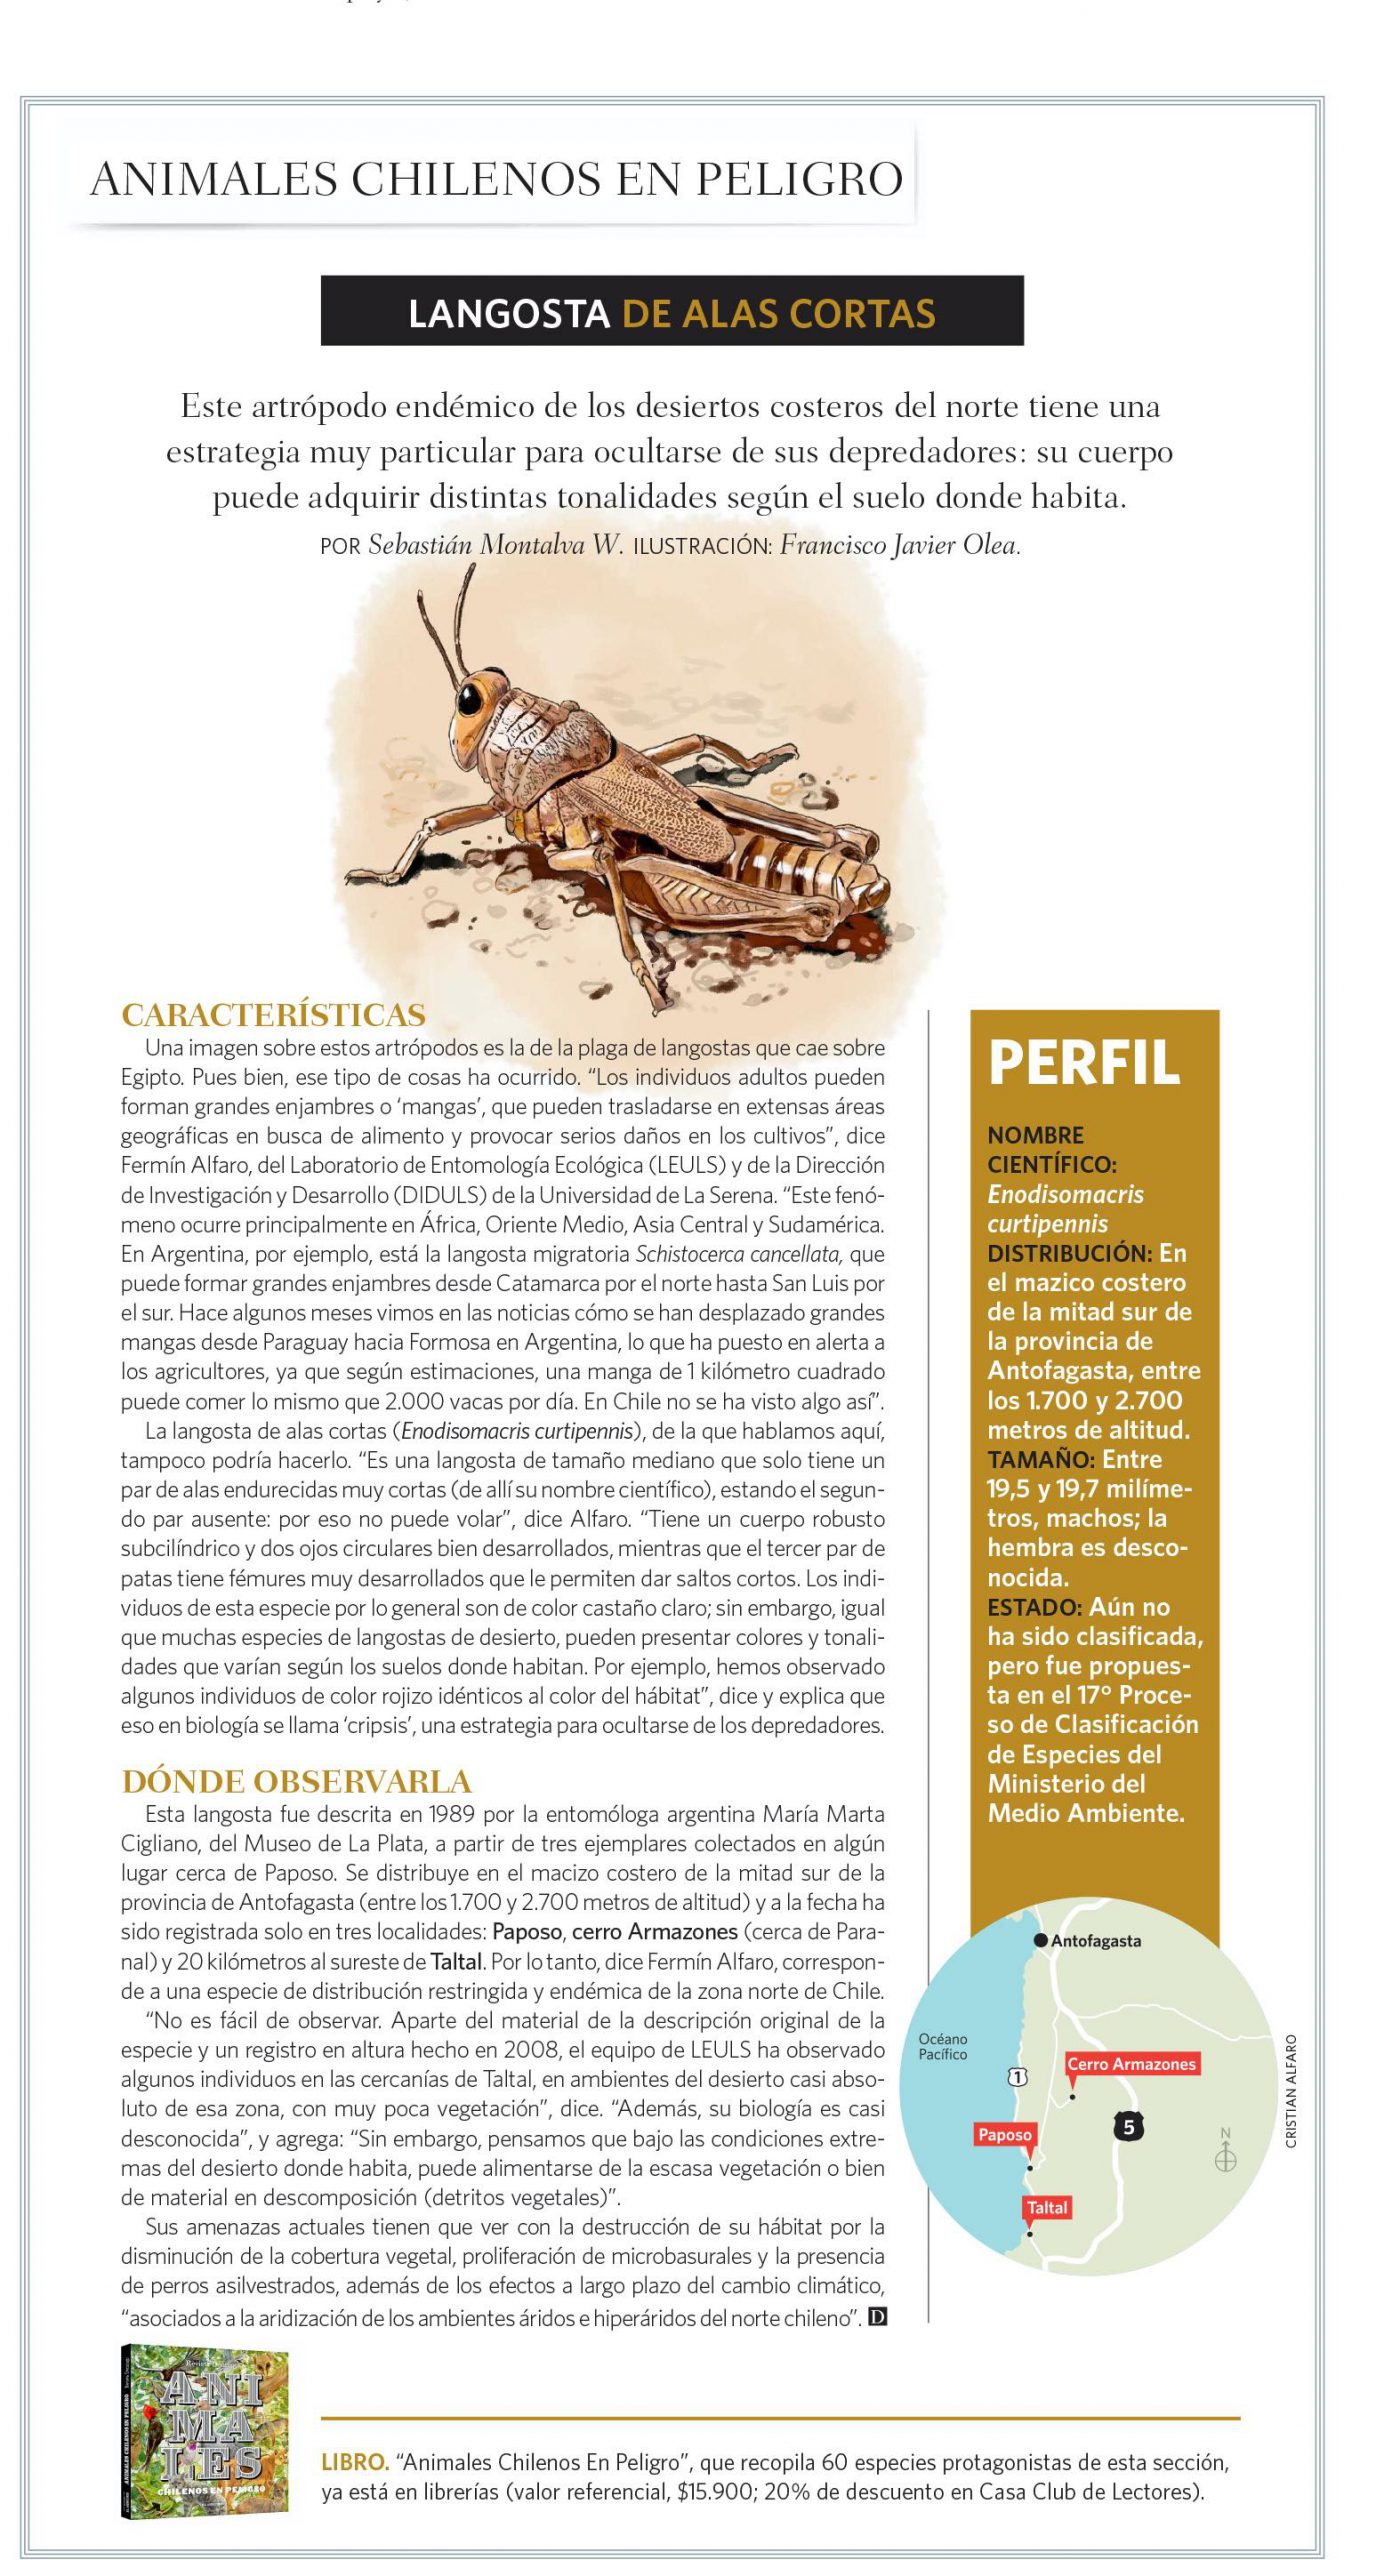 [Revista El Domingo] Animales Chilenos en Peligro